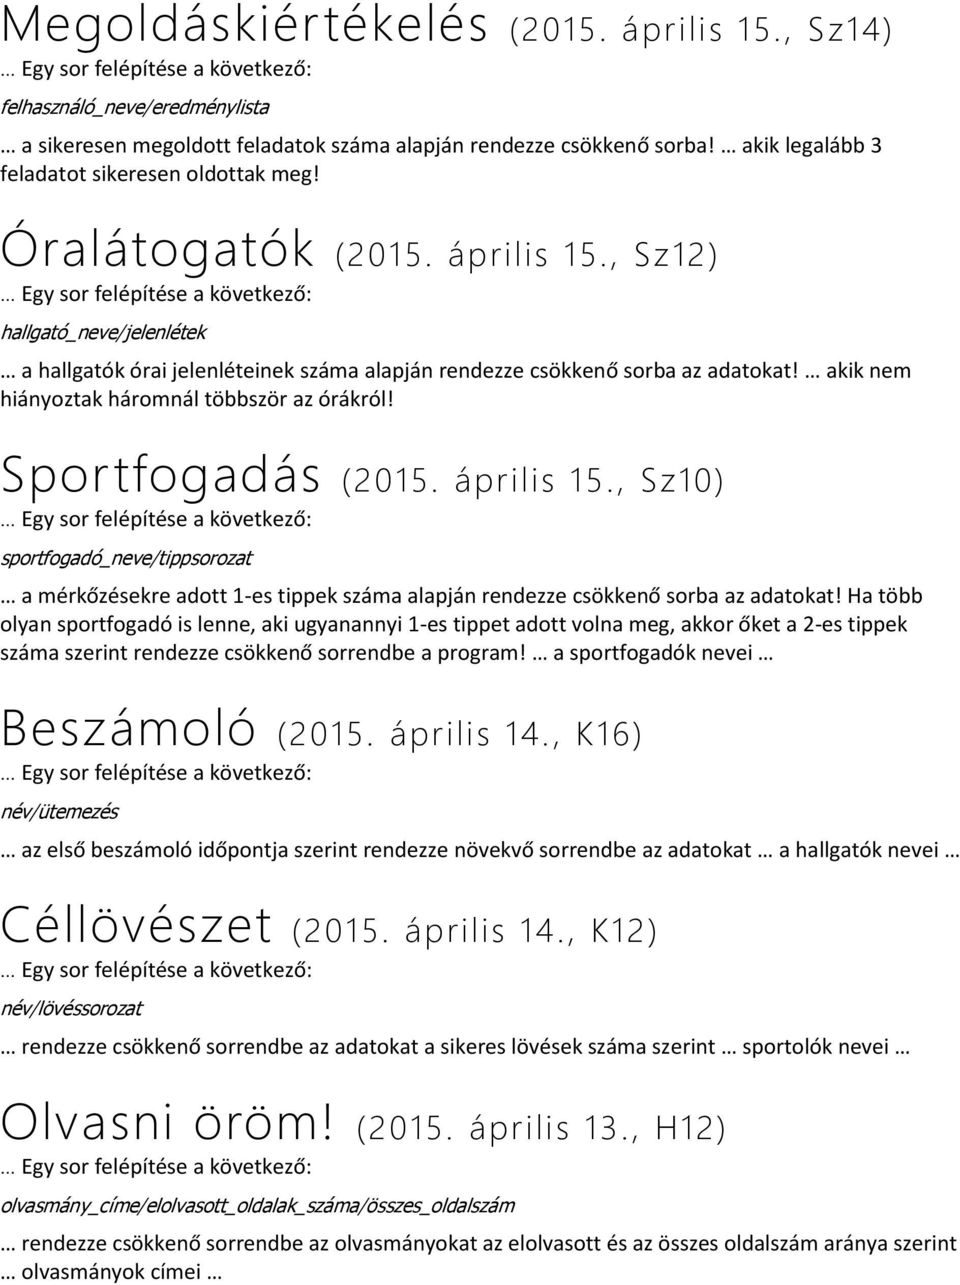 Sportfogadás (2015. április 15., Sz10) sportfogadó_neve/tippsorozat a mérkőzésekre adott 1-es tippek száma alapján rendezze csökkenő sorba az adatokat!